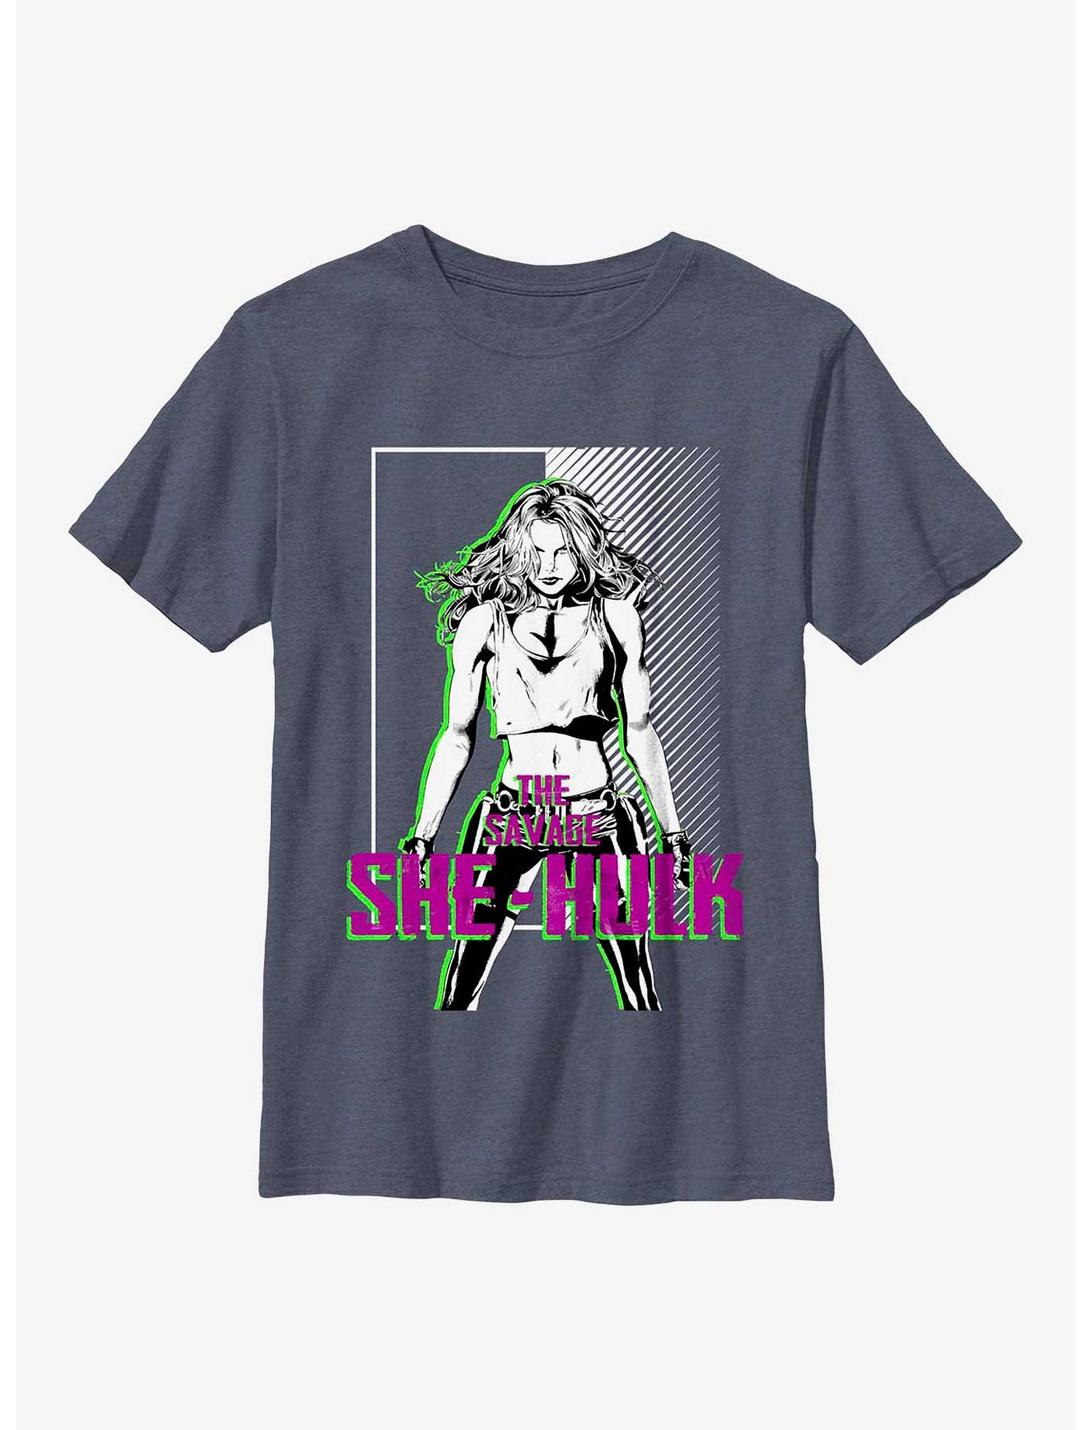 Marvel She-Hulk Savage Youth T-Shirt, NAVY HTR, hi-res